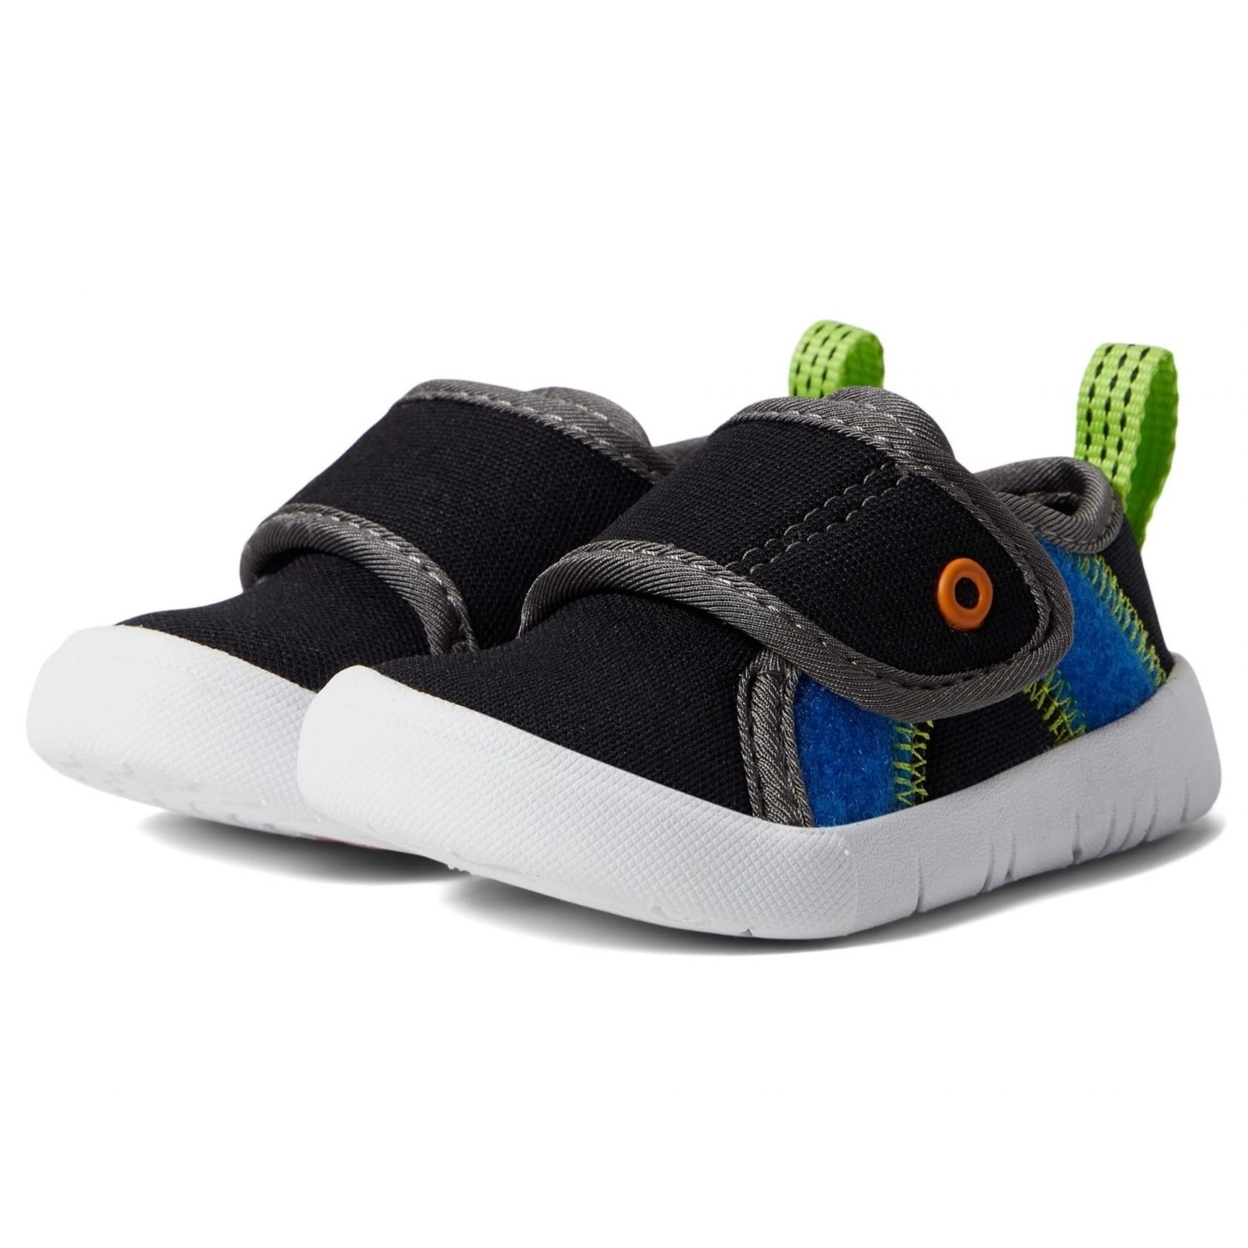 BOGS Unisex Baby Kicker Hook And Loop Shoe Sneaker Black Multi - 72811I-009 1 BLACK MULTI - BLACK MULTI, 7 Little Kid